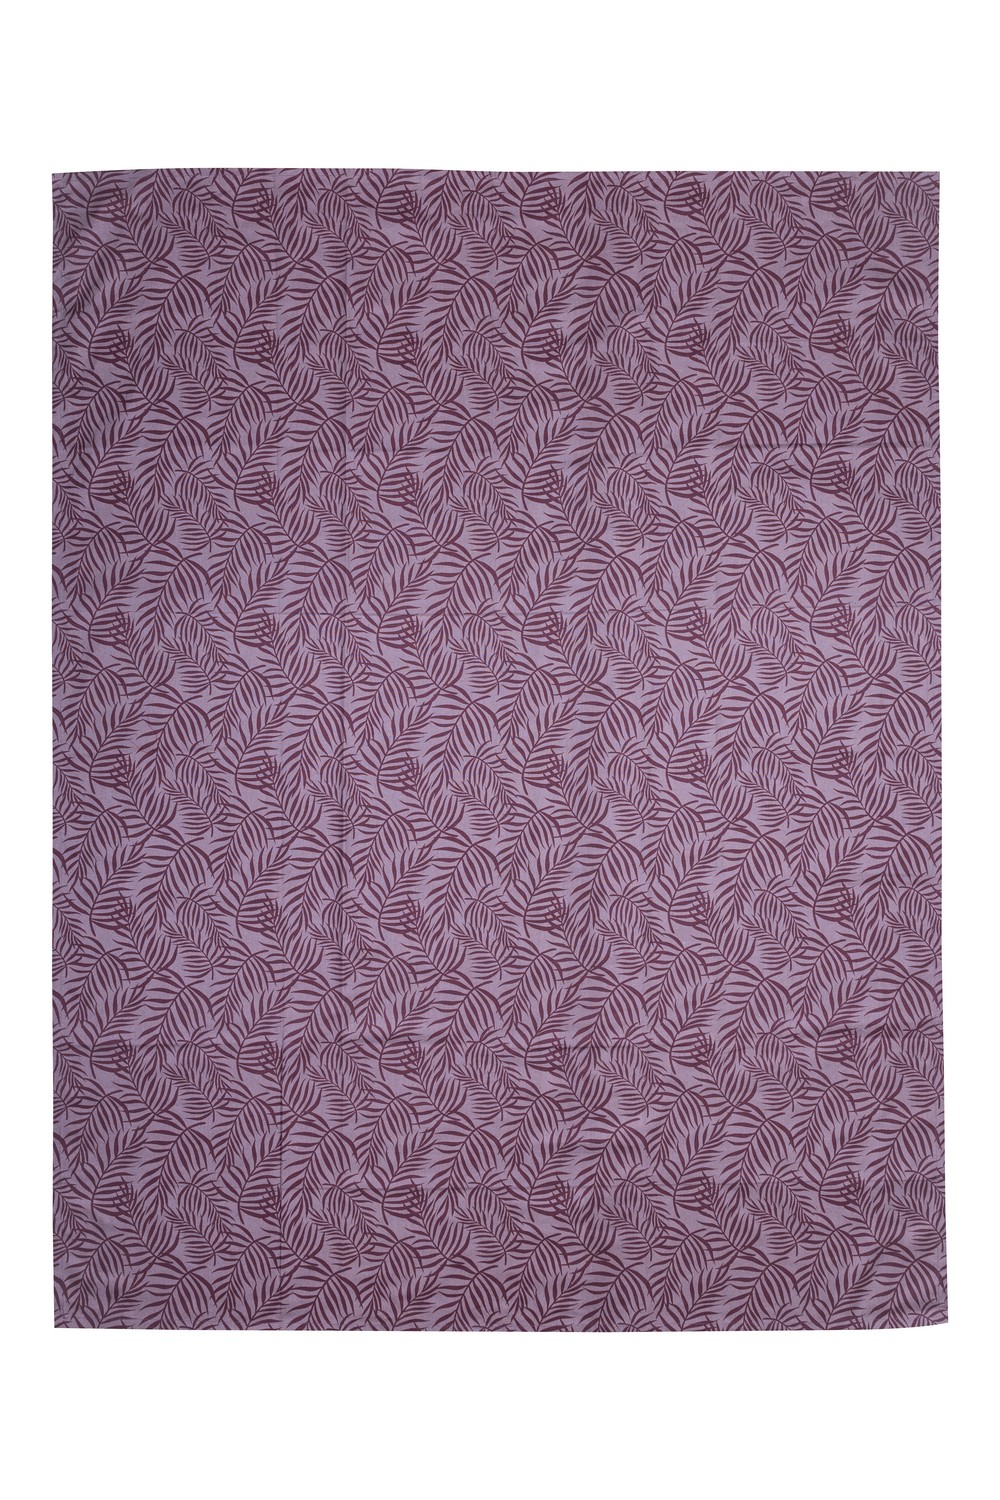 Tischdecke LEAVES ca. 130 x 170 cm lavender, 100 % Baumwolle (bio), GOTS-zertifiziert   